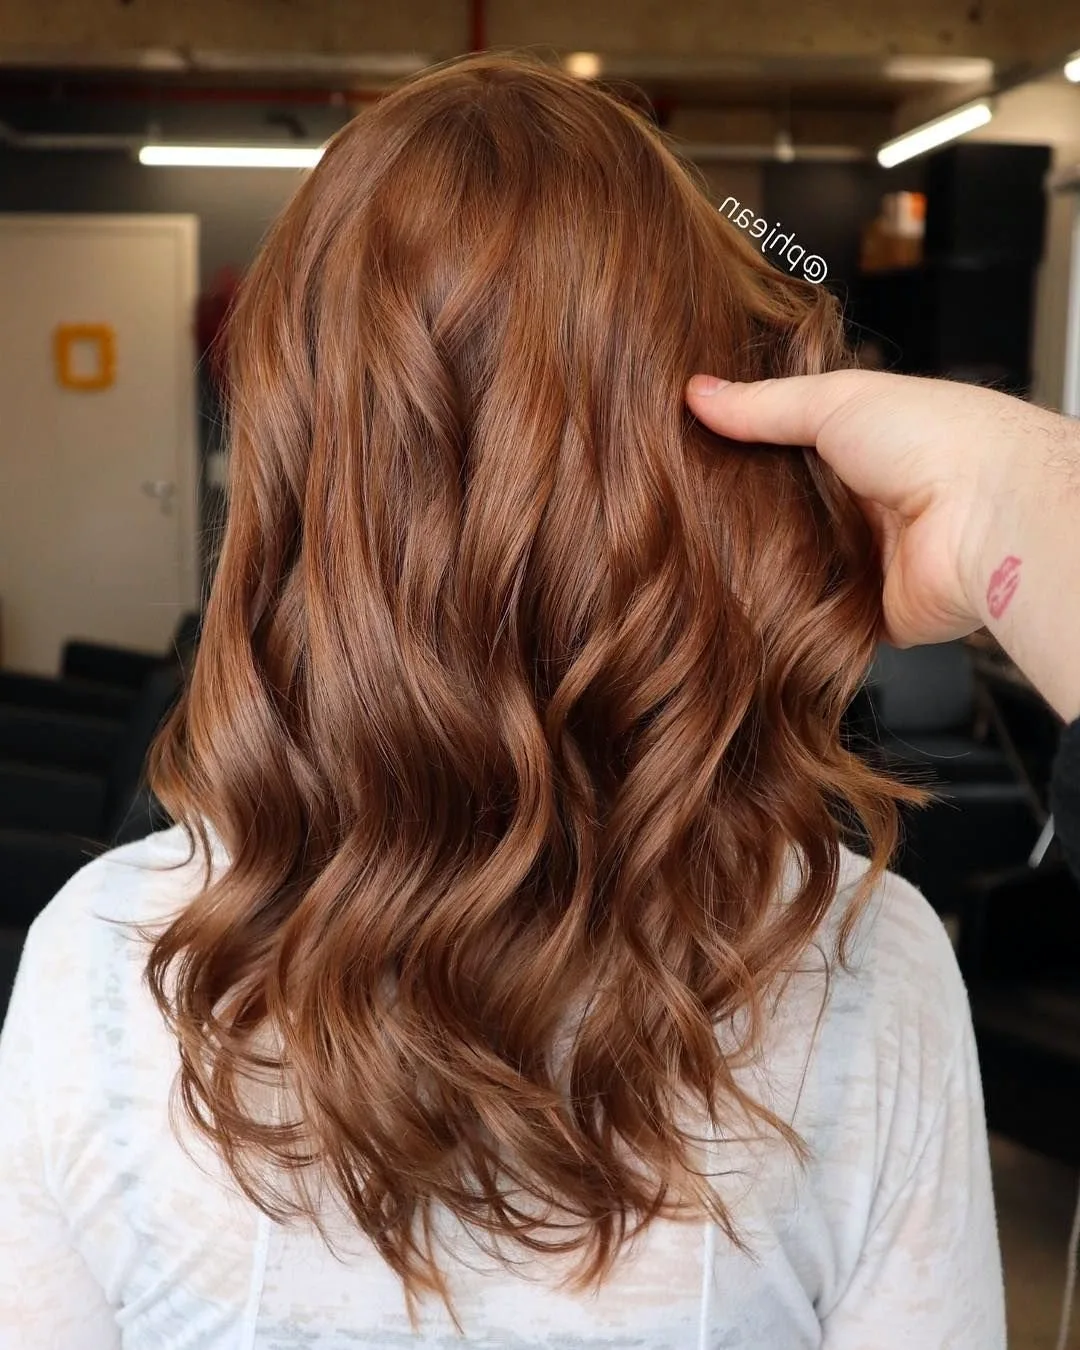 окрашивание волос в шоколадный цвет фото